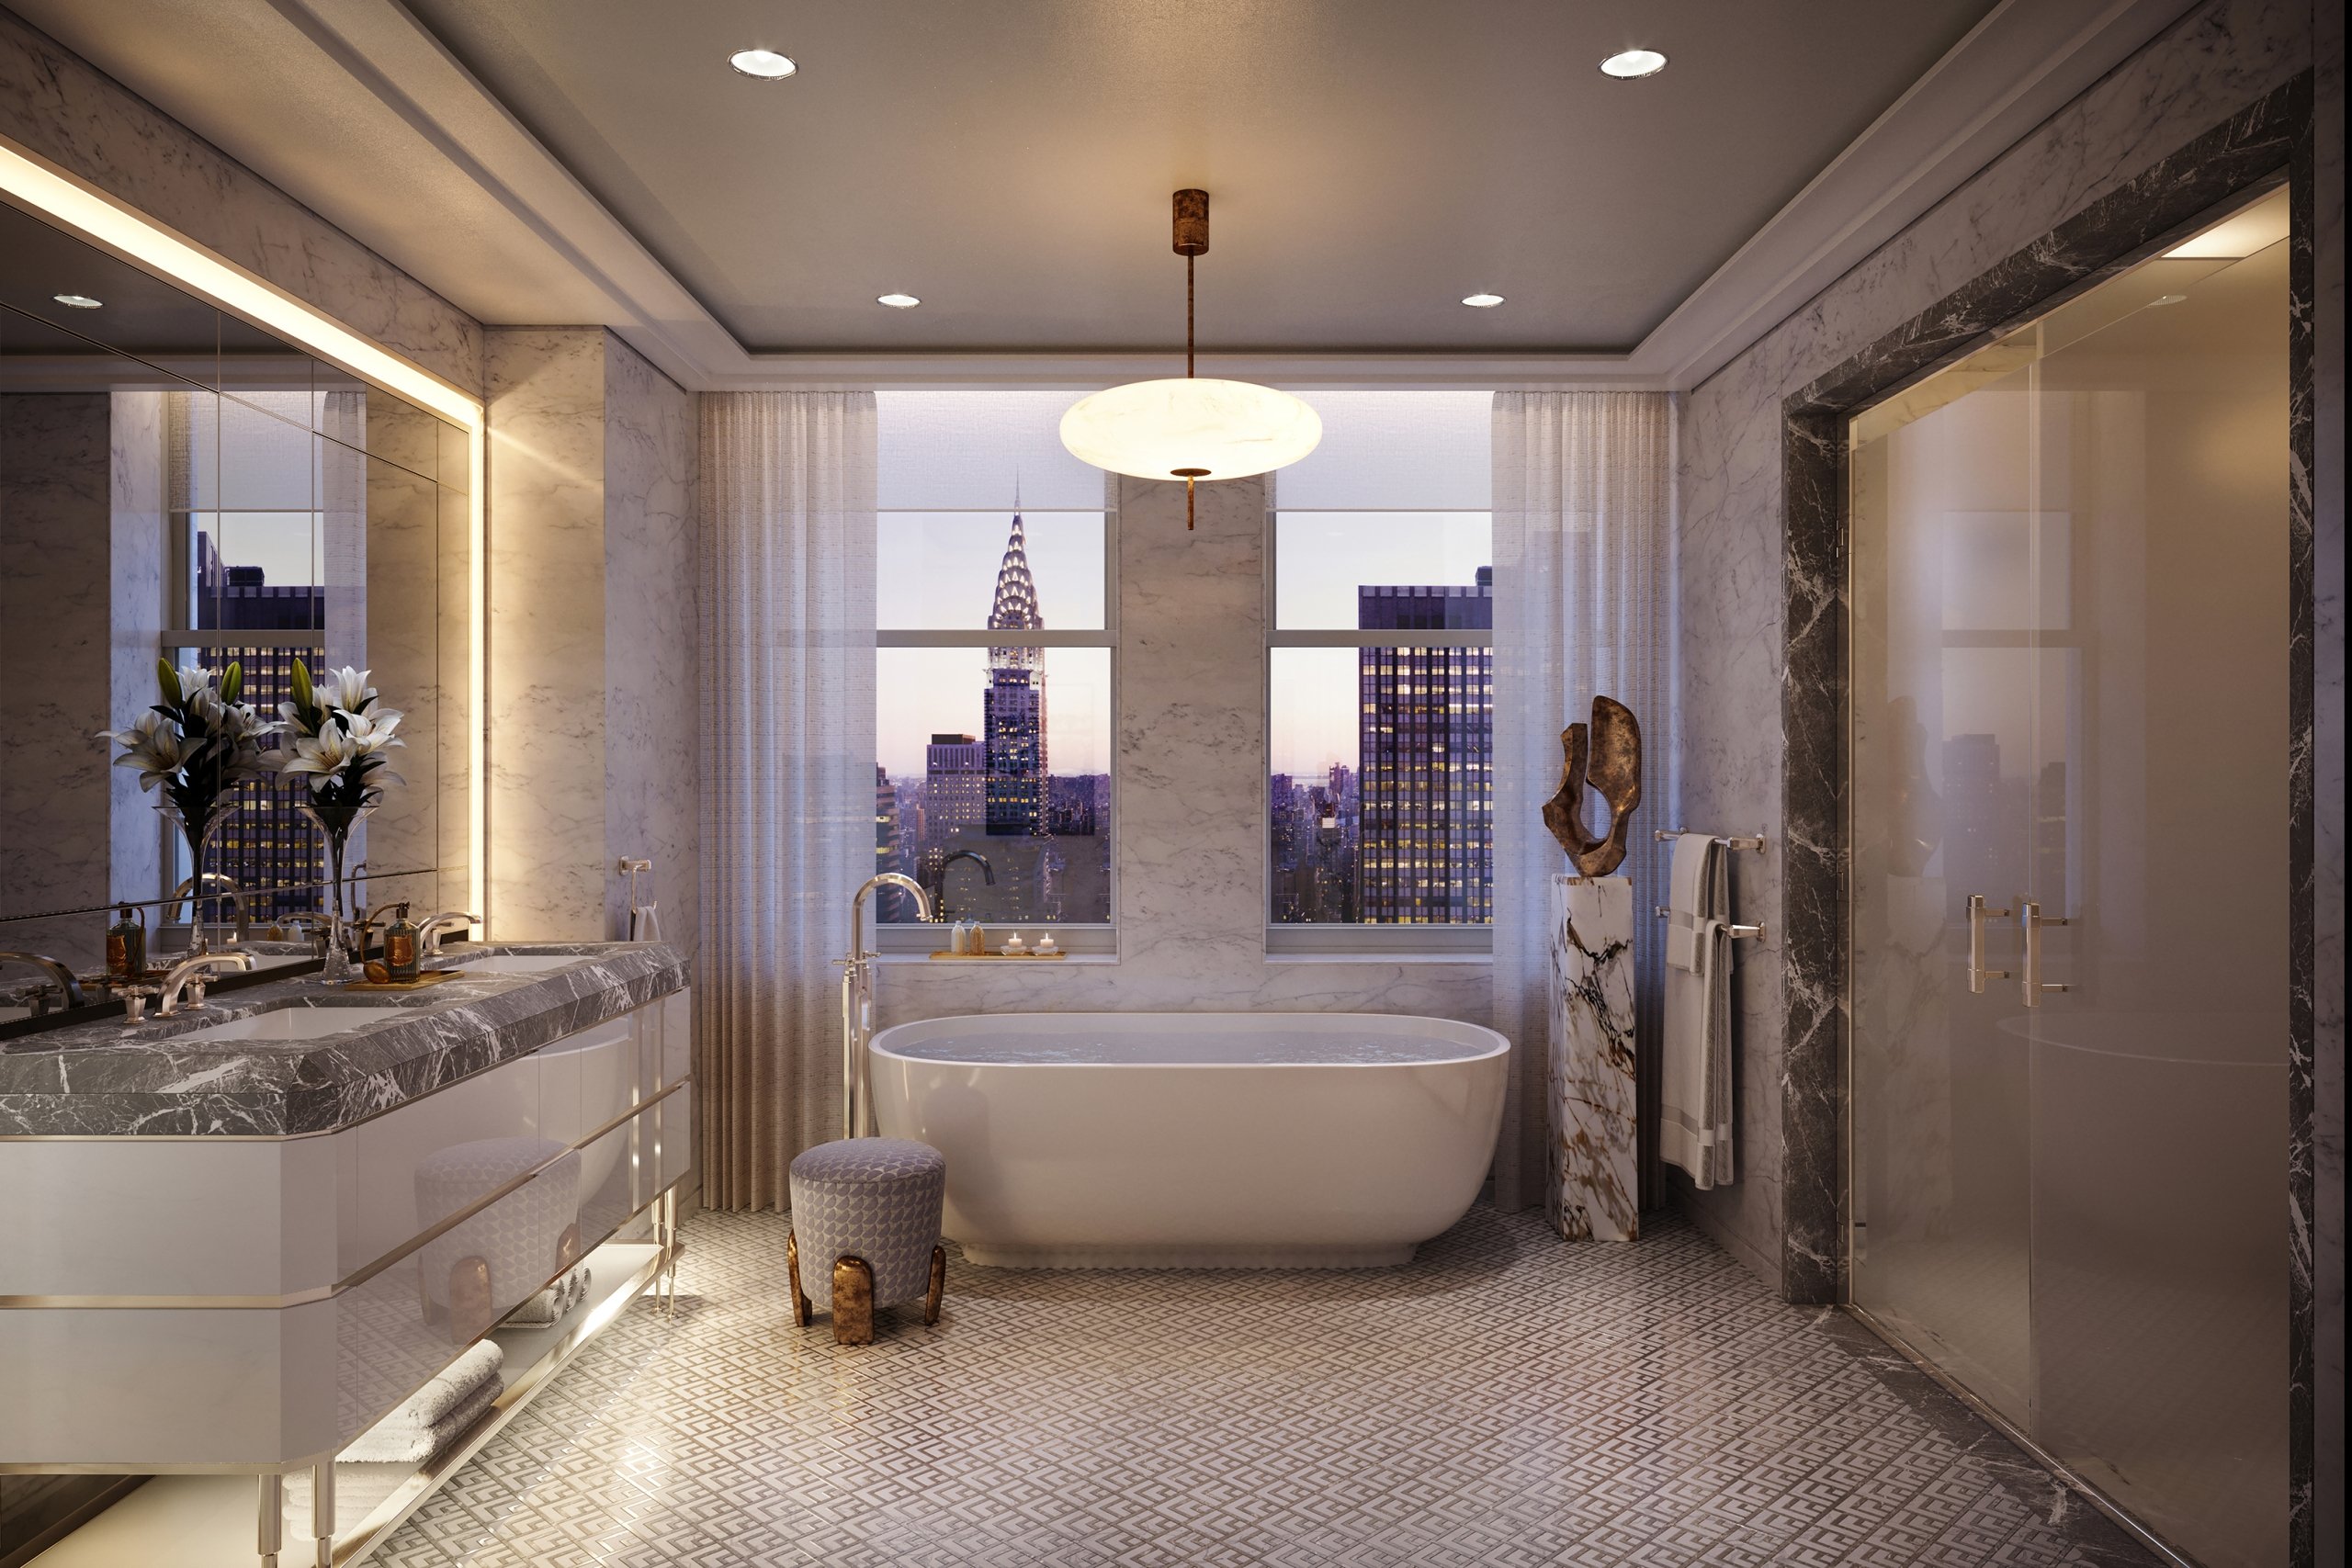 Luxury BathtuaCasa de Banho Principalb in the Waldorf Astoria Residential Primary Bathroom